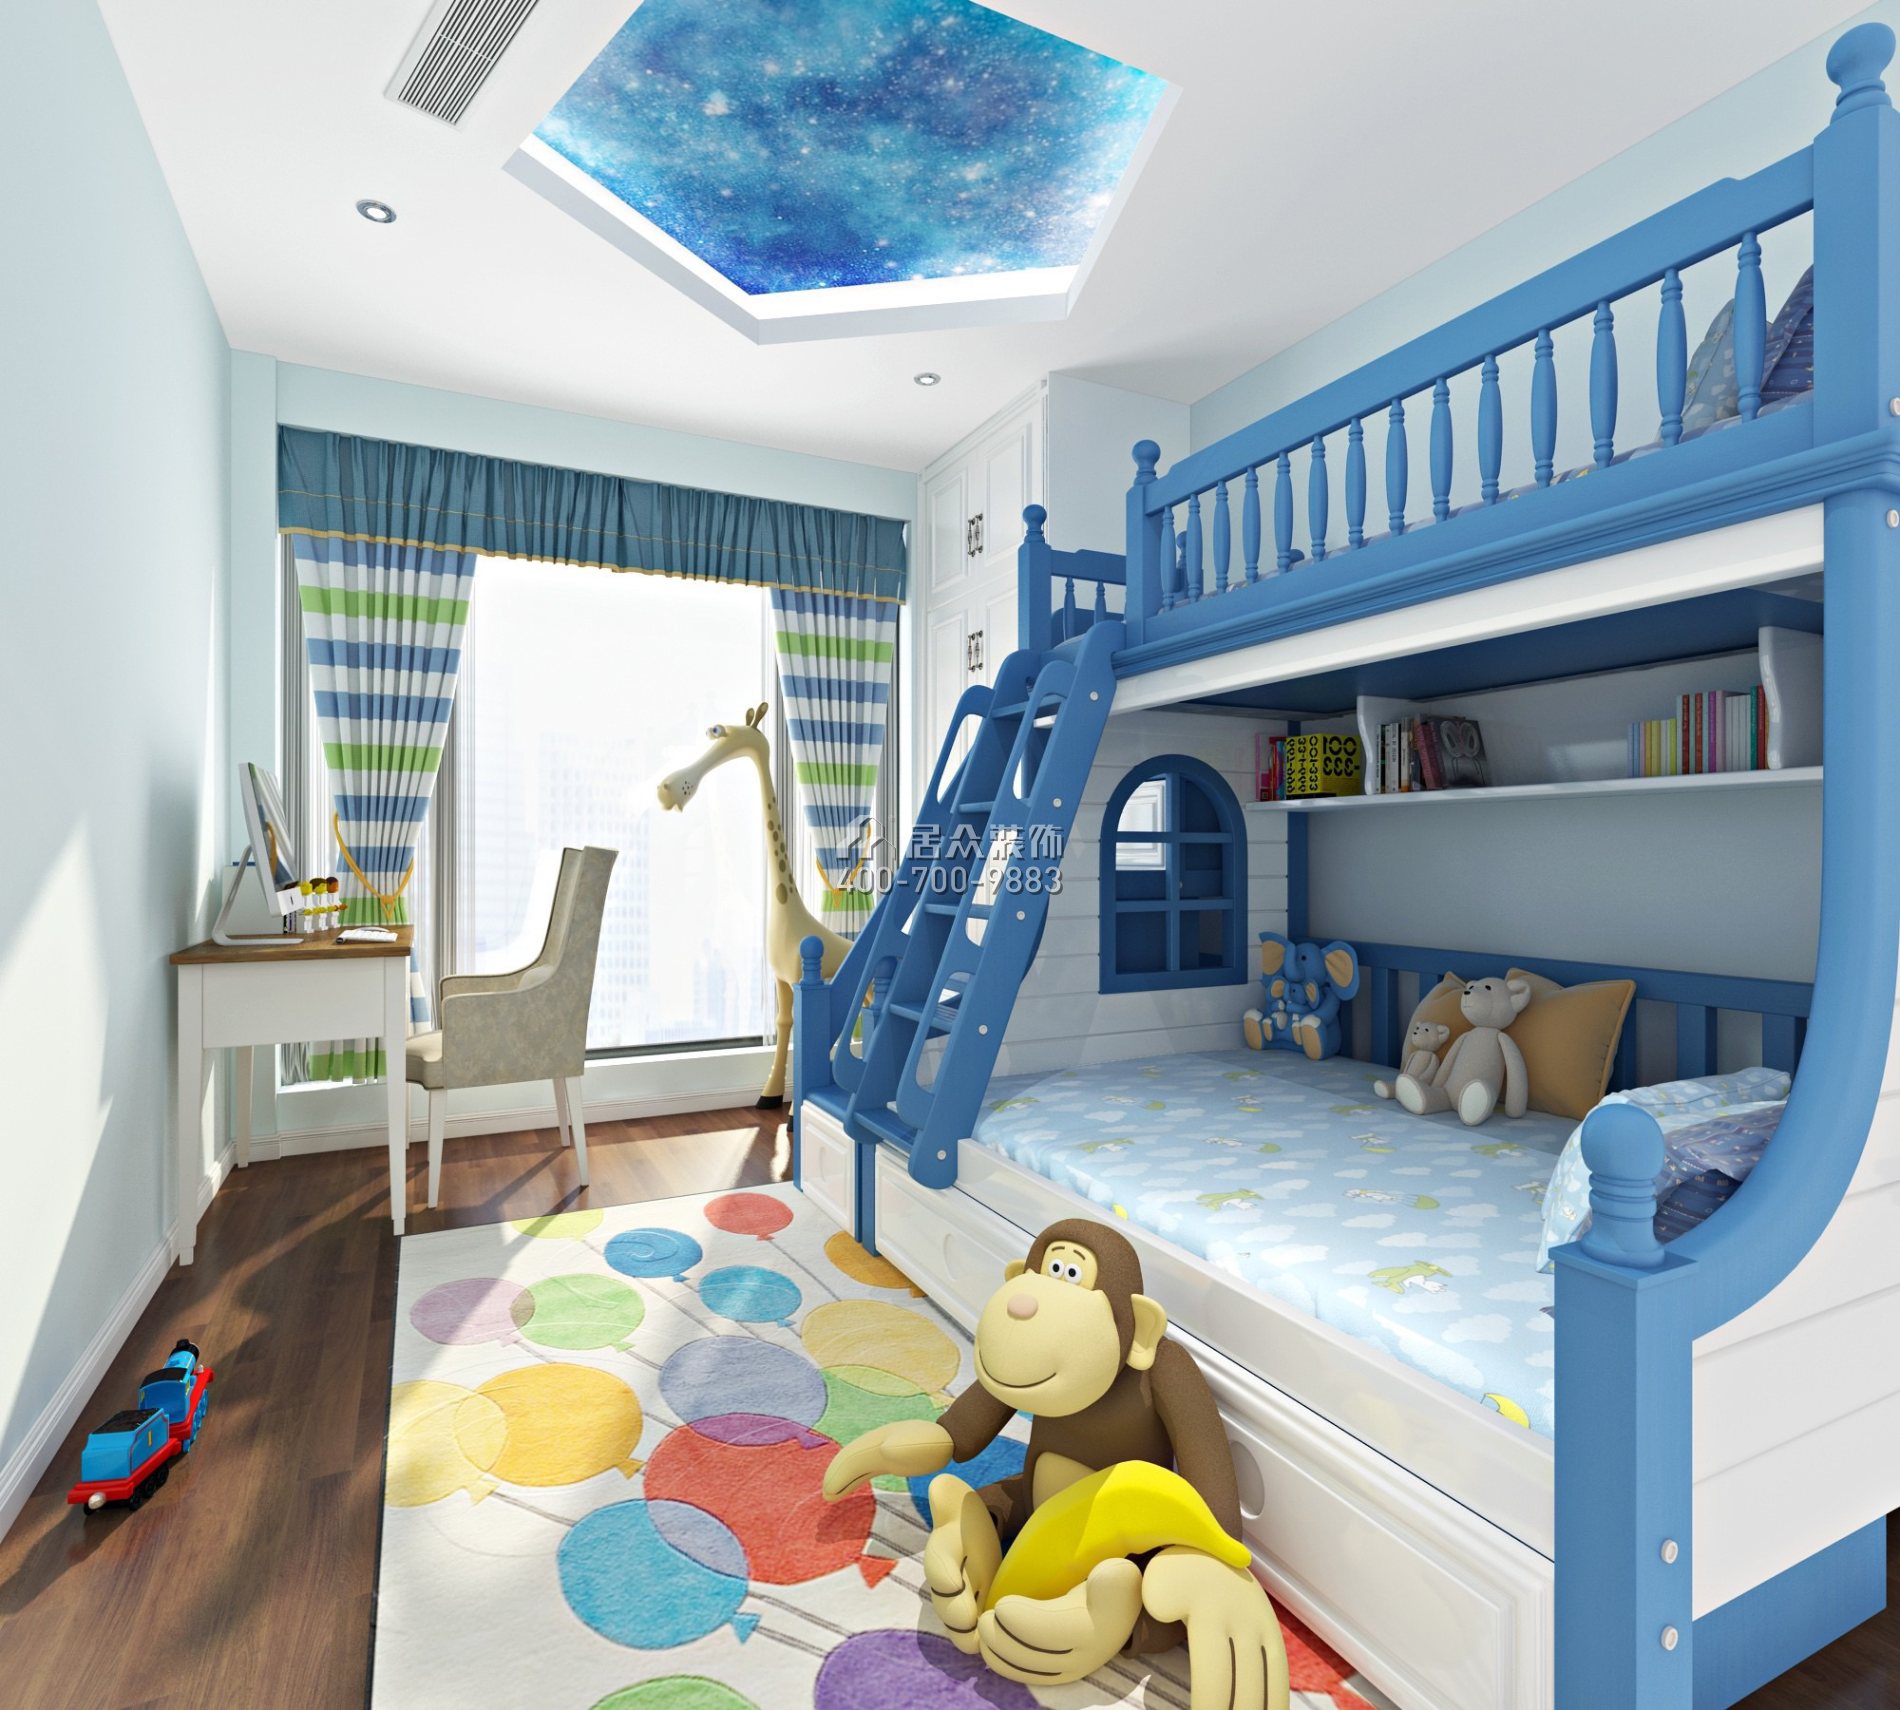 潤科華府·御峰123平方米地中海風格平層戶型兒童房裝修效果圖